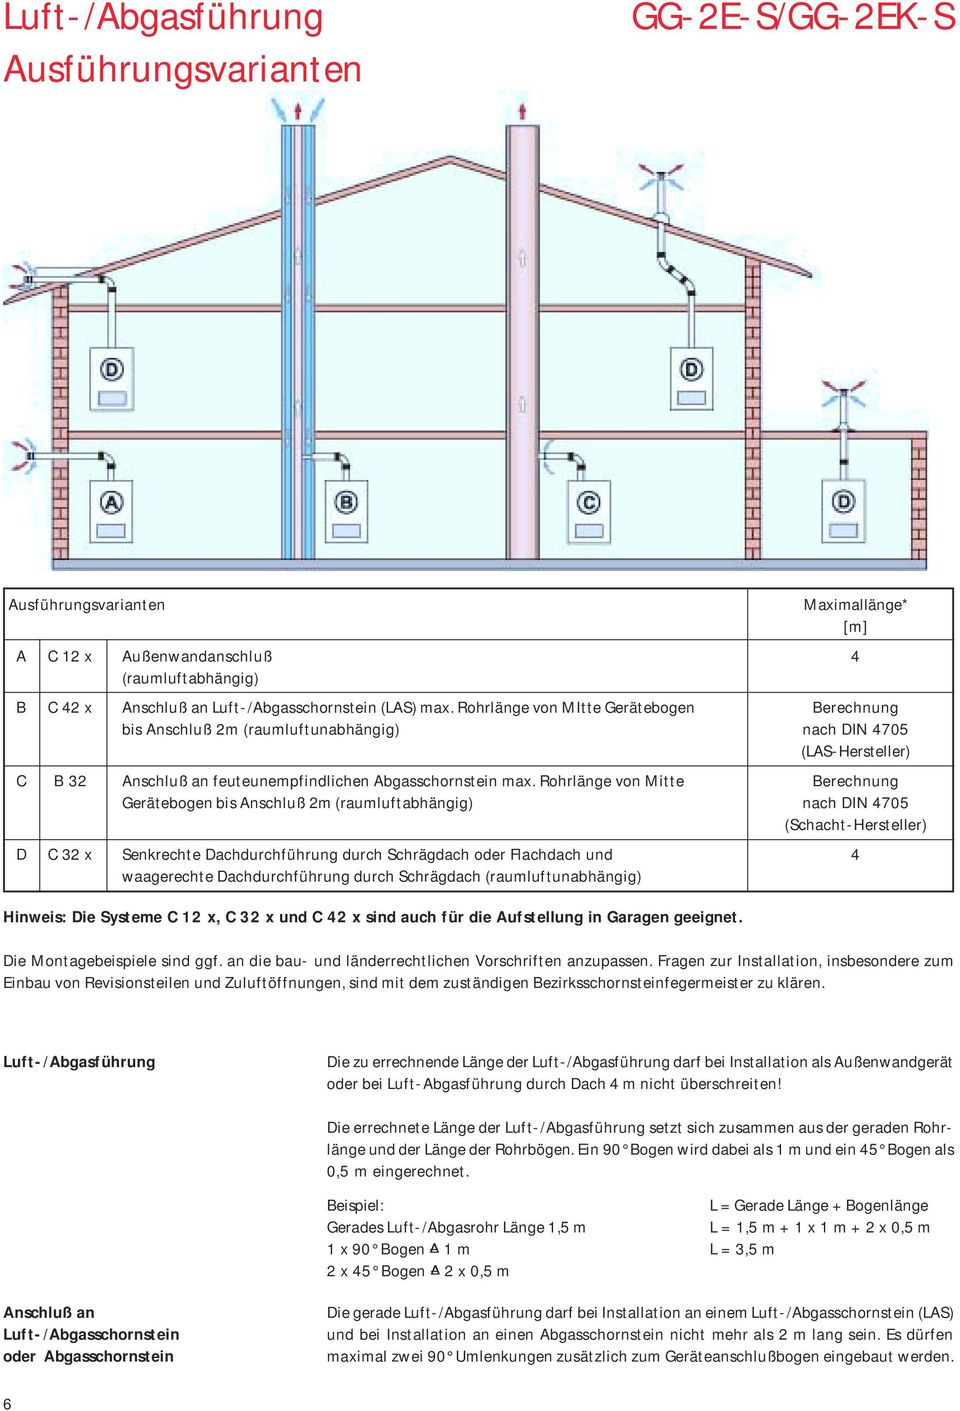 Rohrlänge von Mitte Berechnung Gerätebogen bis Anschluß 2m (raumluftabhängig) nach DIN 4705 (Schacht-Hersteller) D C 32 x Senkrechte Dachdurchführung durch Schrägdach oder Flachdach und 4 waagerechte